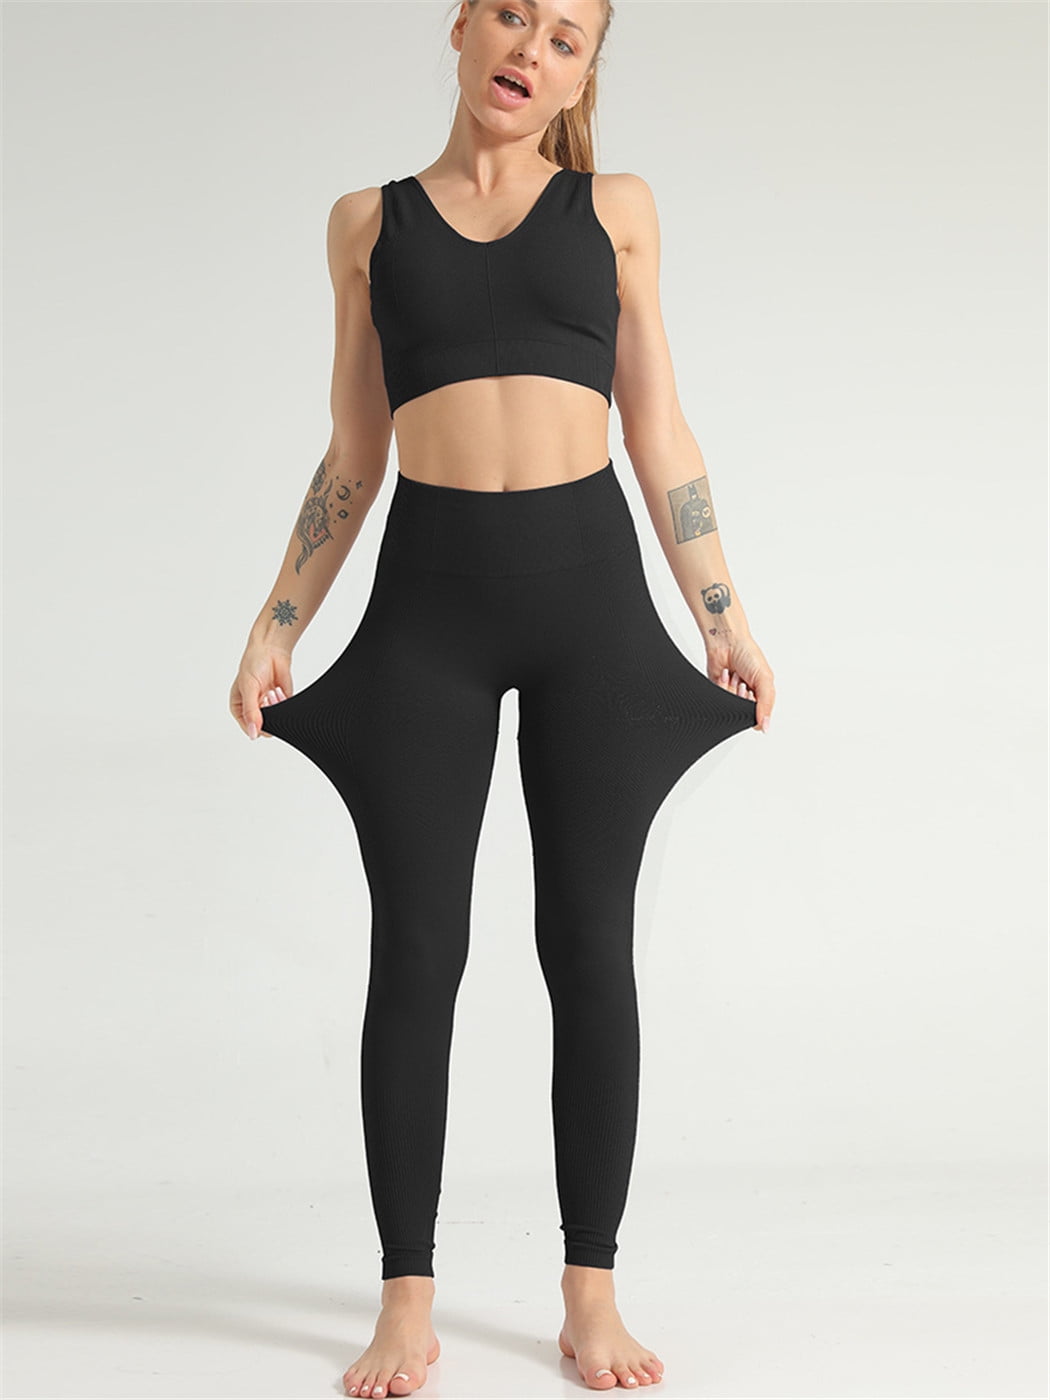 Five 5 Pieces Set Women's Sports Bra and pants S-3XL – Fit Body Gal  #yogaoutfitsforwomen #yogaclothes #yogafashion #yo…